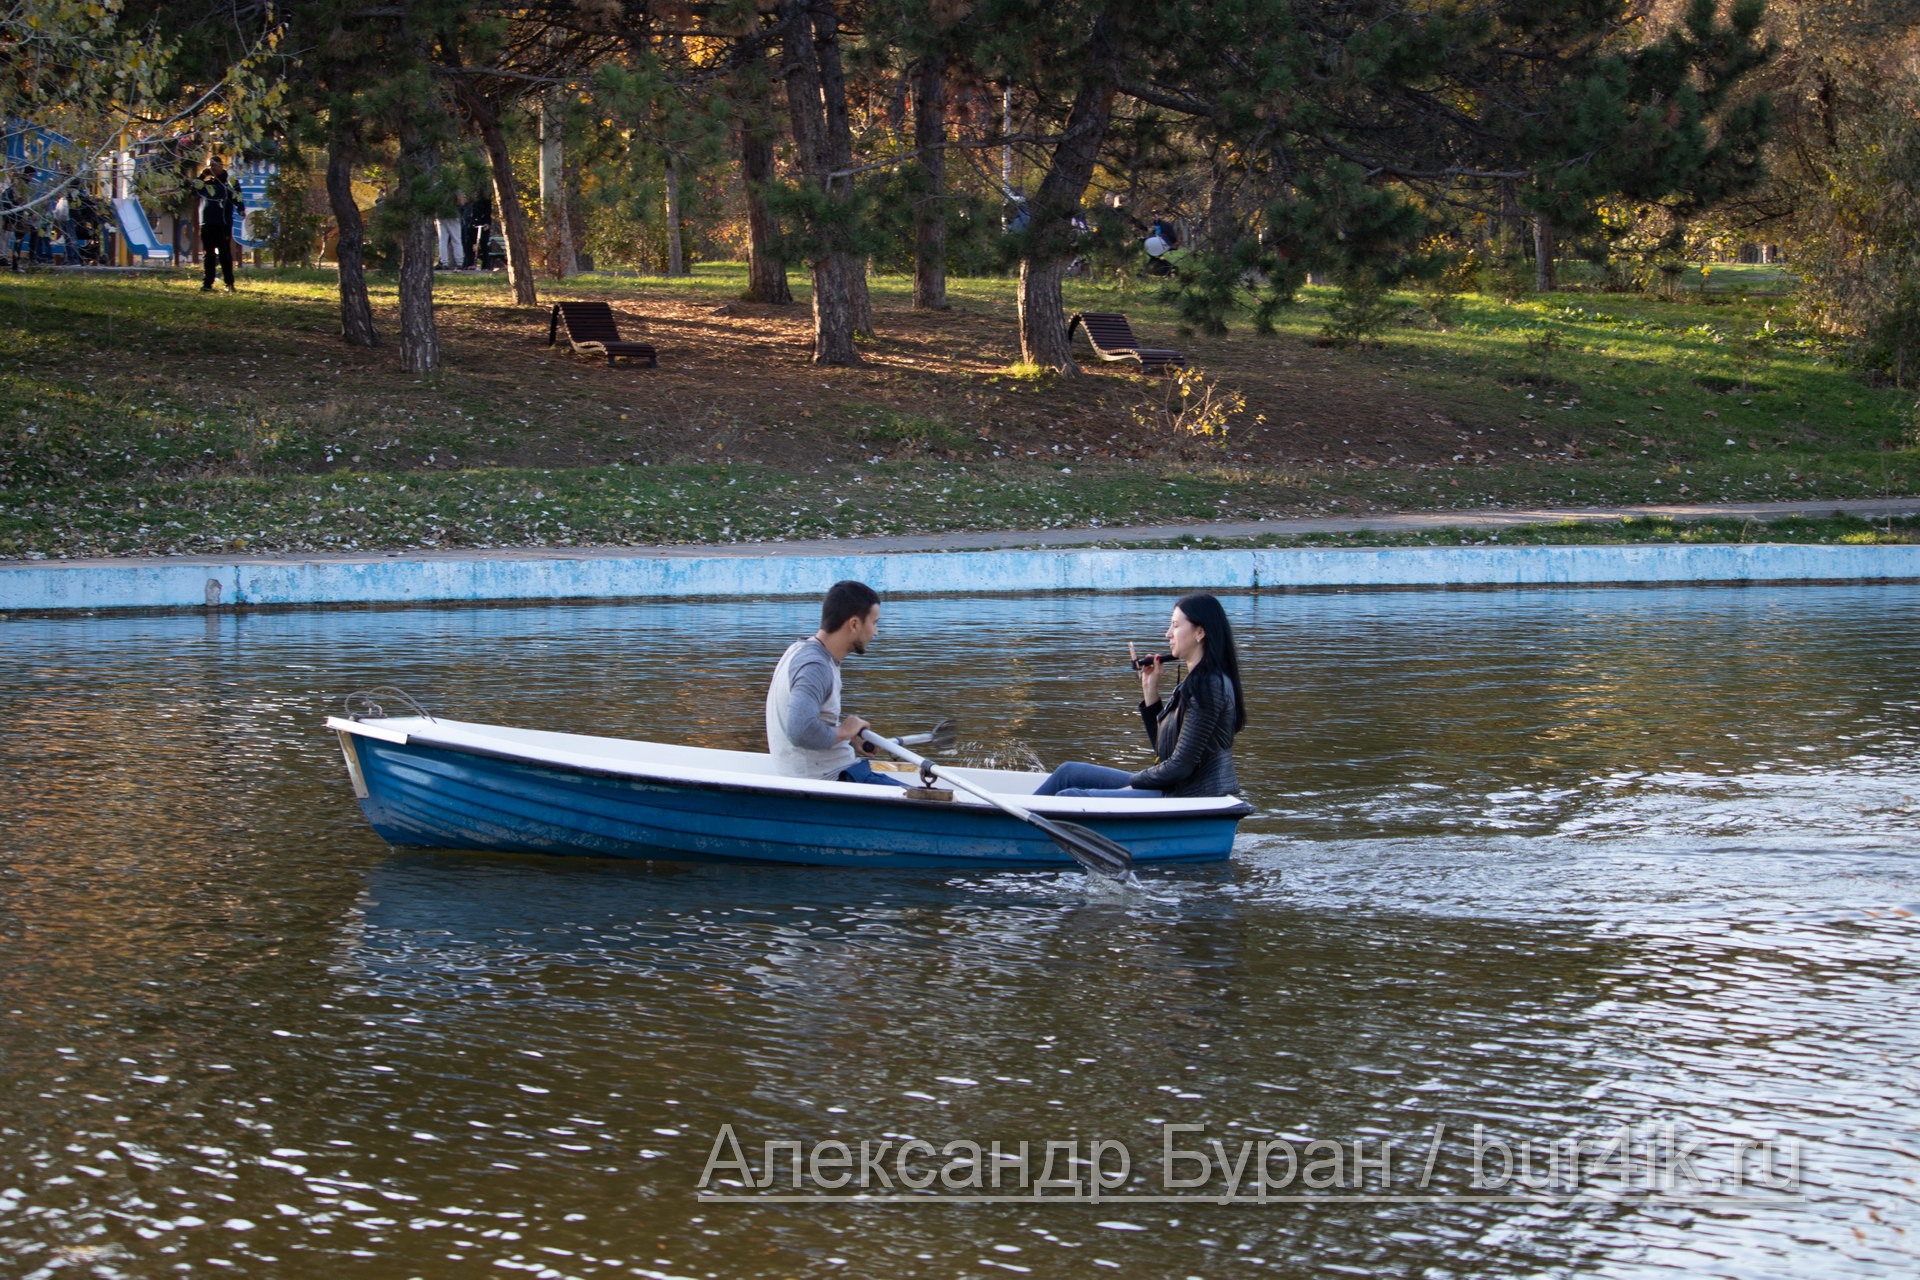 Парень и девушка плывут на лодке на пруду в осеннем парке - Украина, Одесса, 17,10,2019